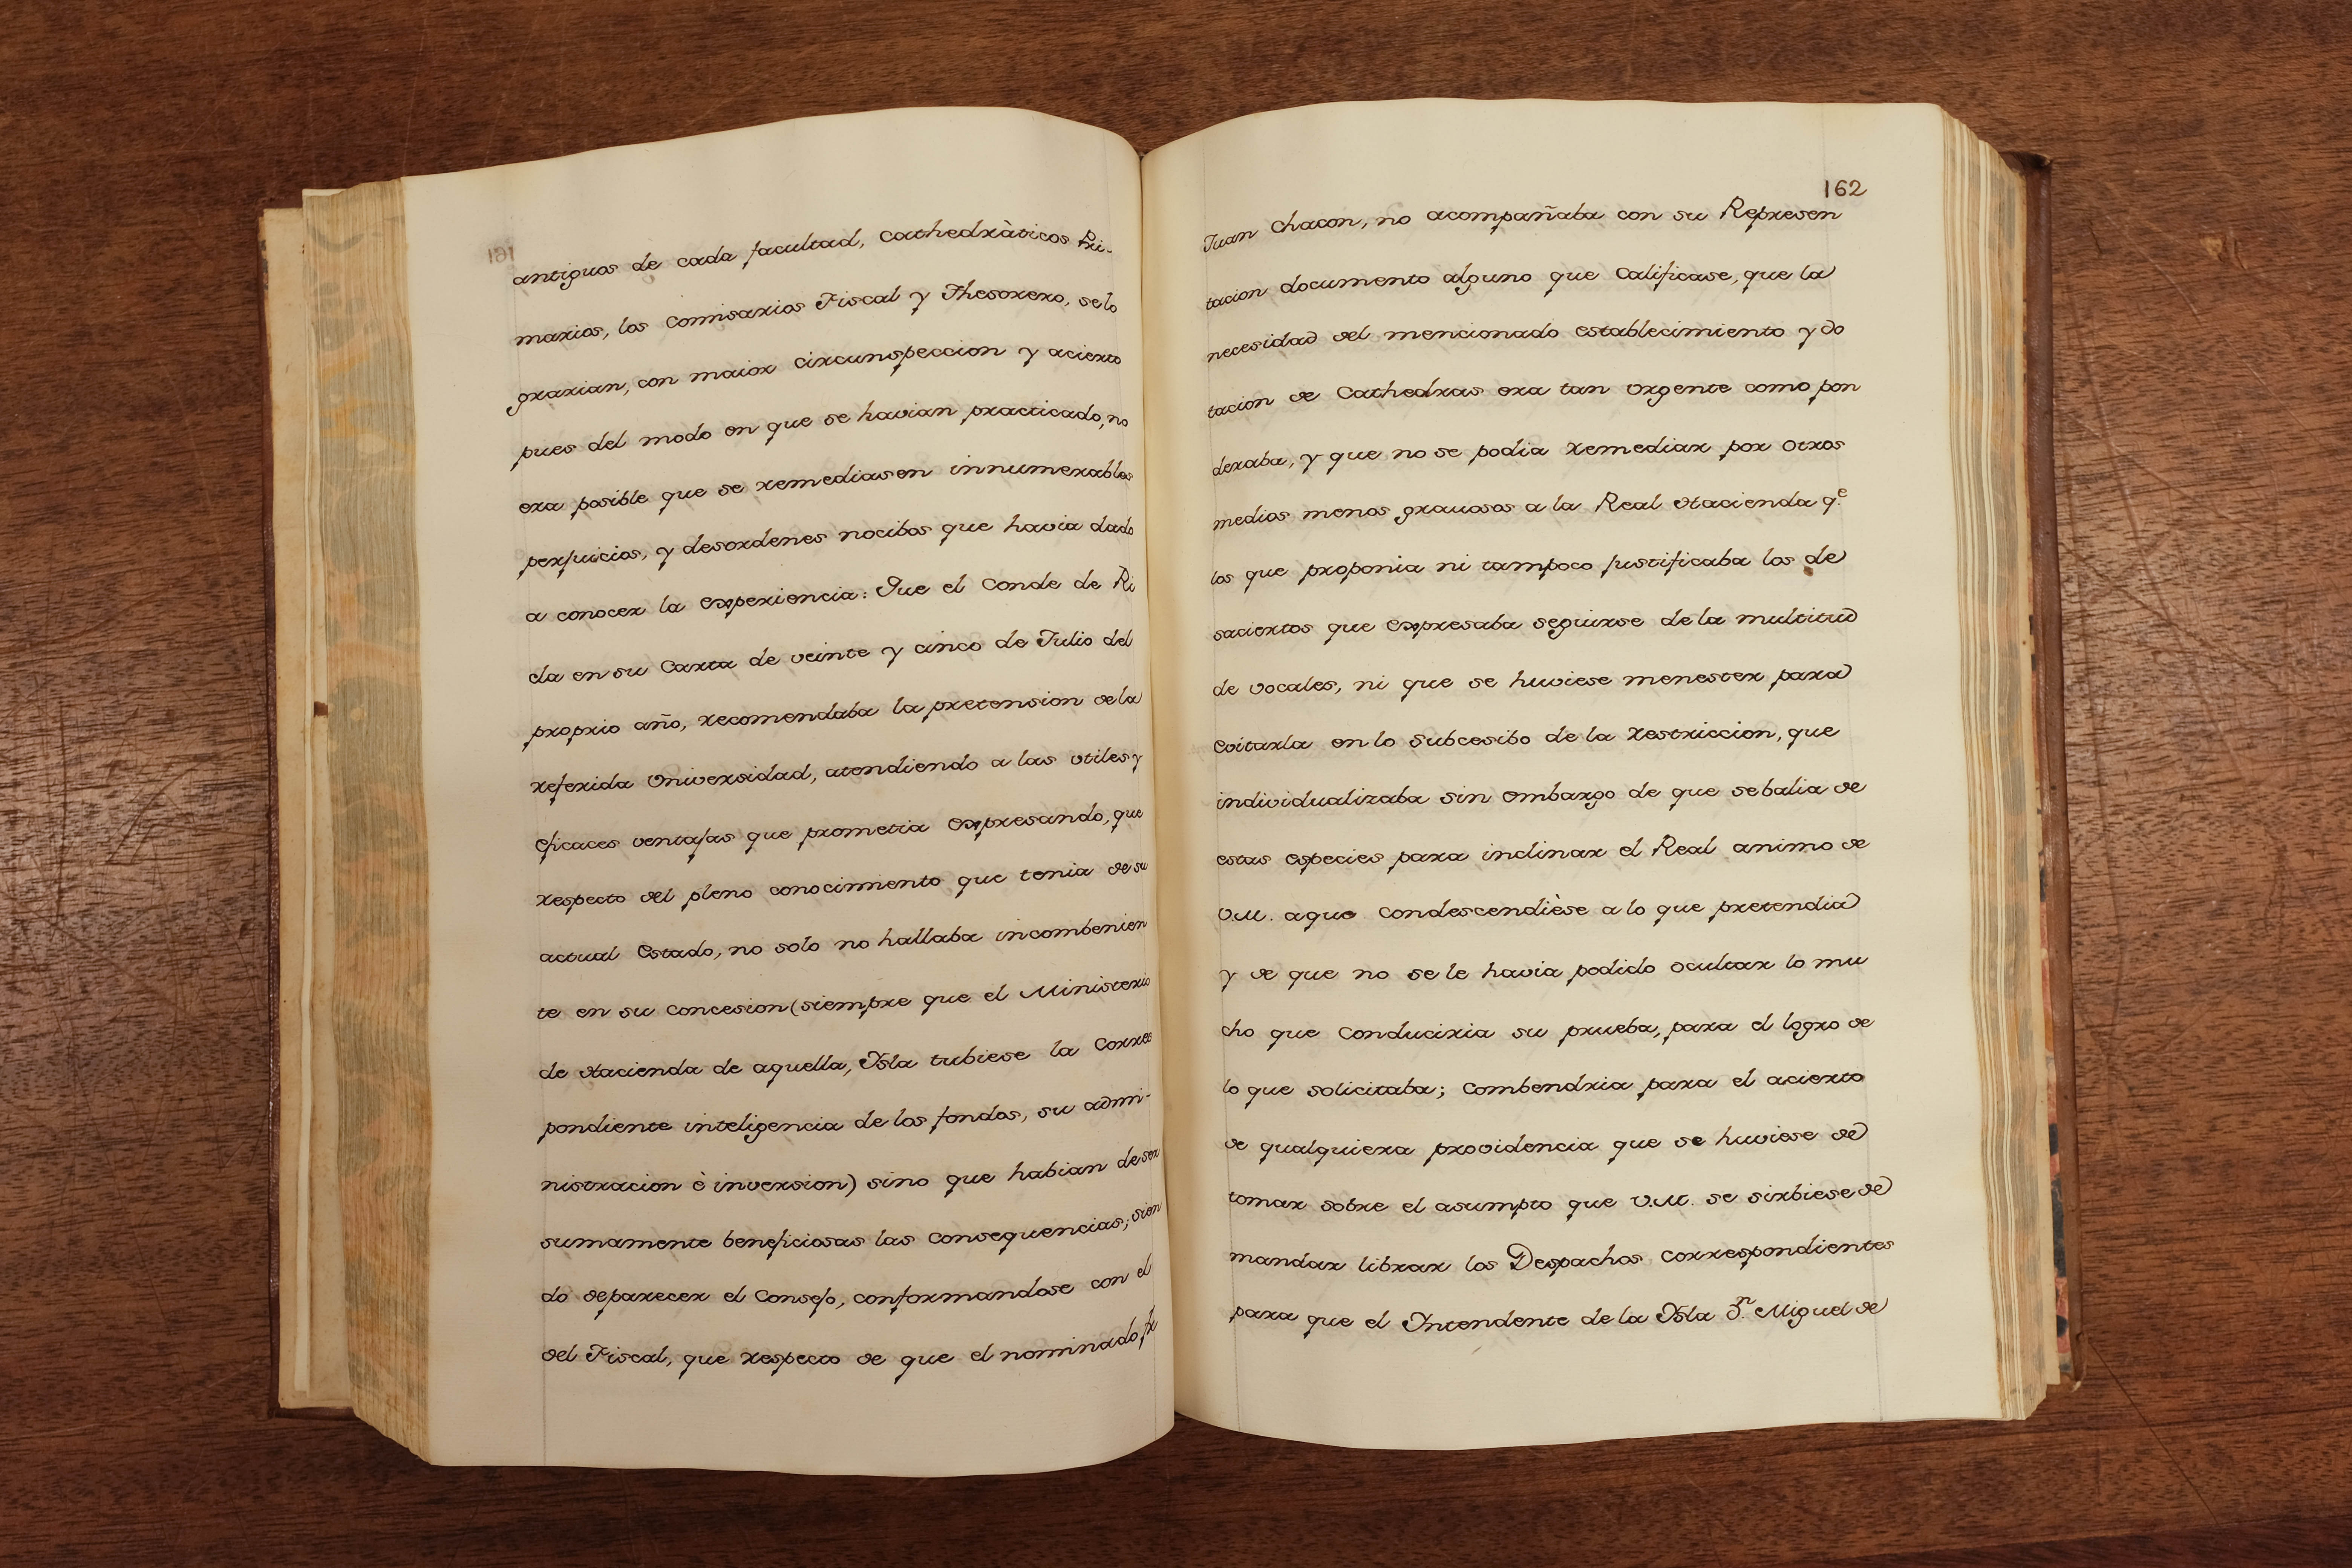 Coleccion de Consultas. Bound volume of 42 manuscript consultations, 1767 - Image 12 of 27